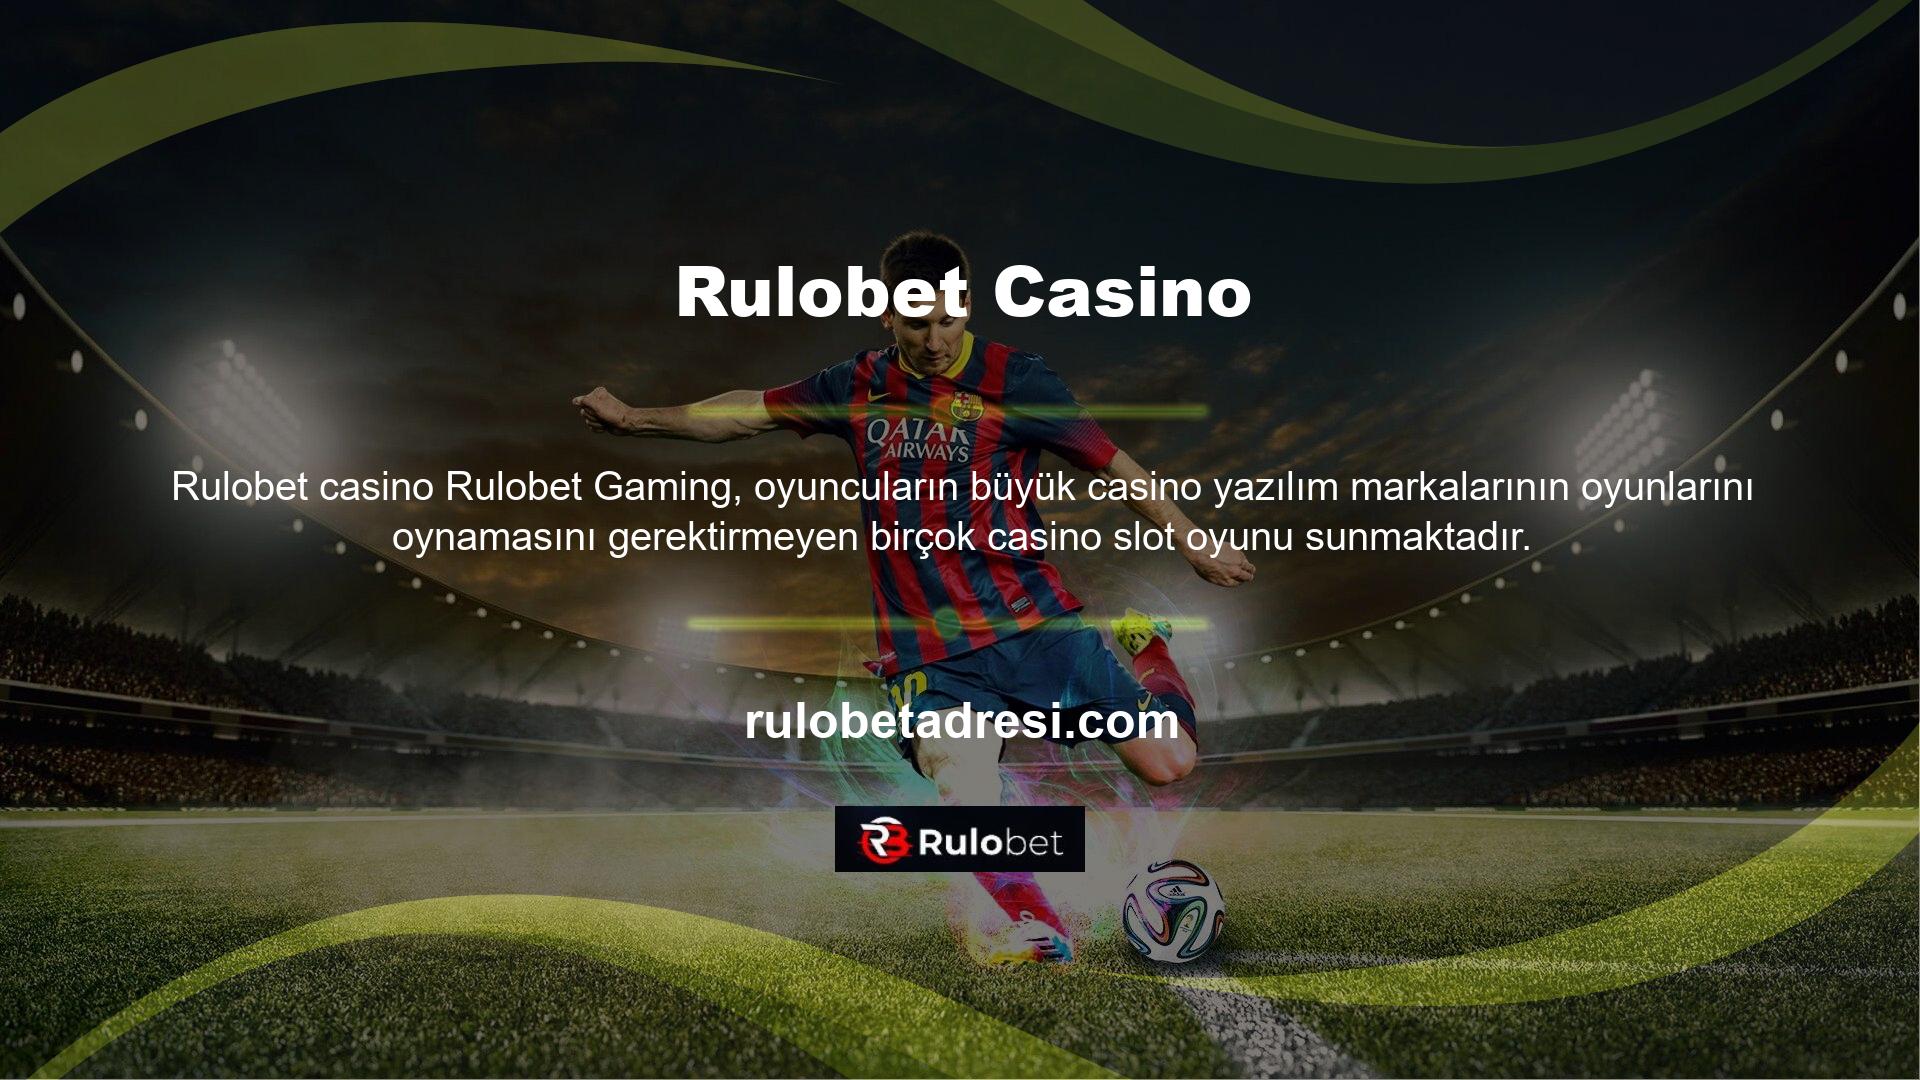 Ayrıca web sitemize ve mobil arayüzümüze oyun arama özelliği ekleyerek oyuncuların aradıkları casino oyunlarını bulmalarını kolaylaştırdık